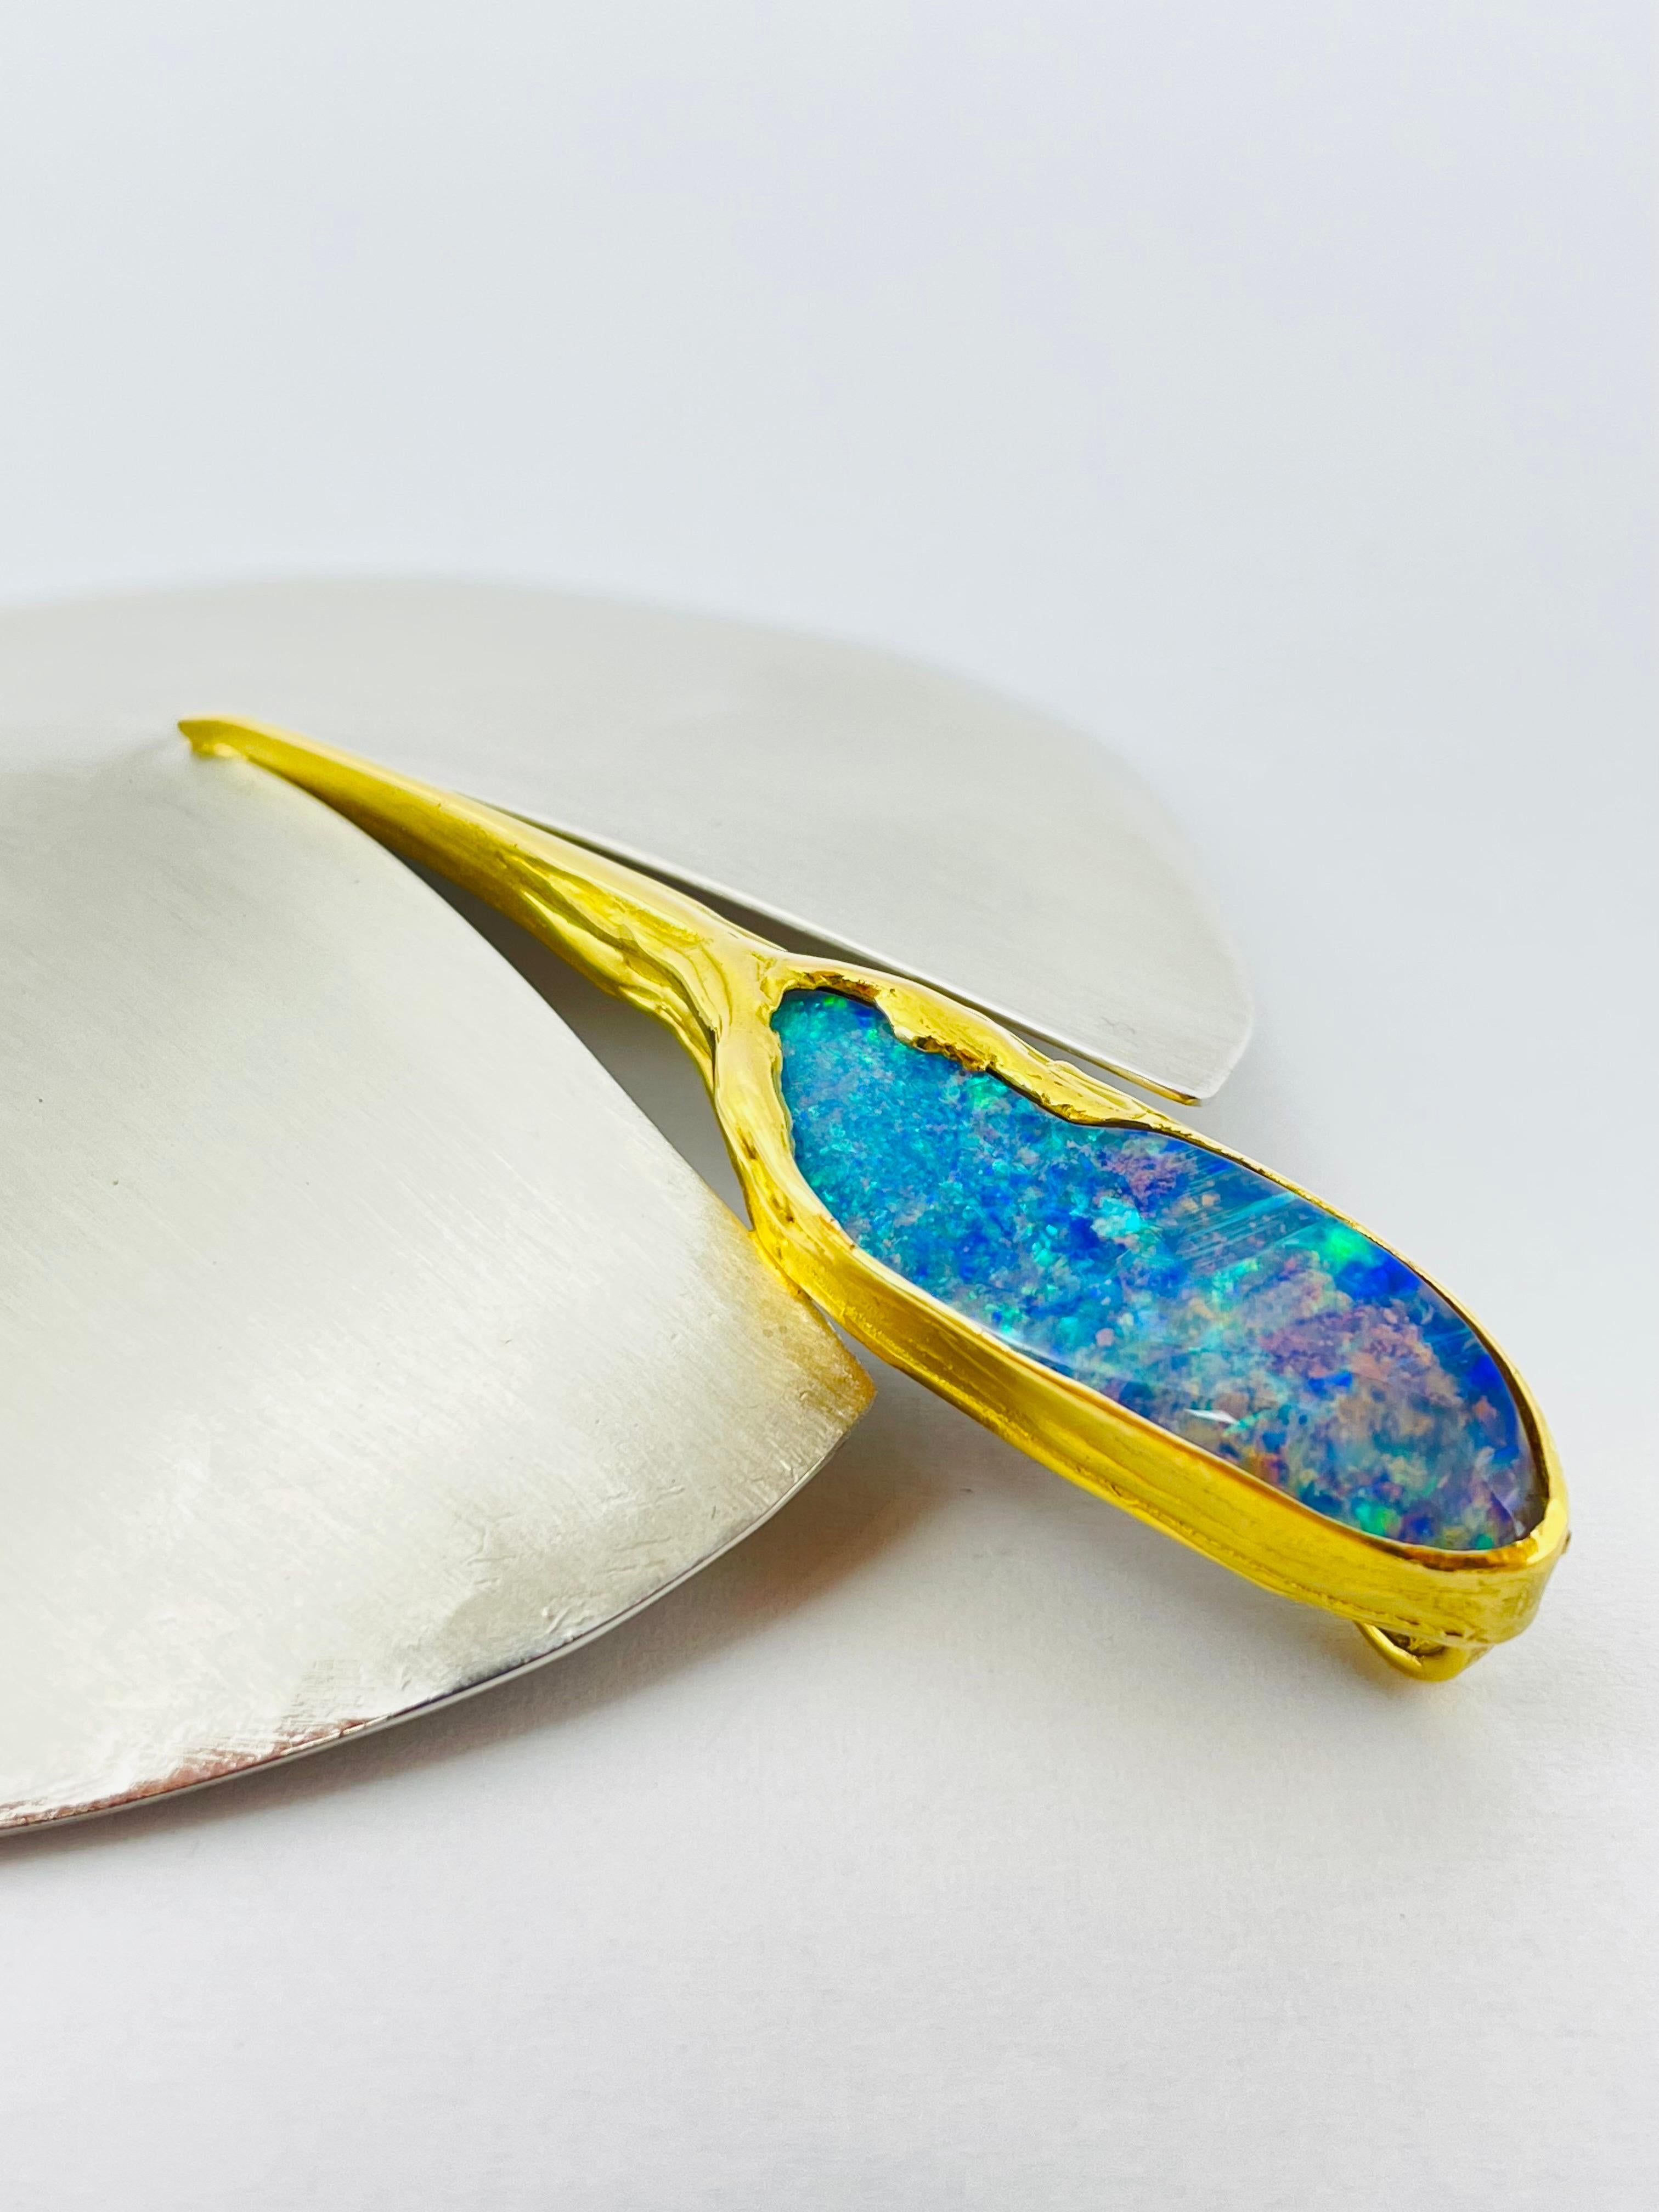 Bicolor Platinum/18k Gold Brooch-Pendant with Australian Opal, Unique For Sale 8